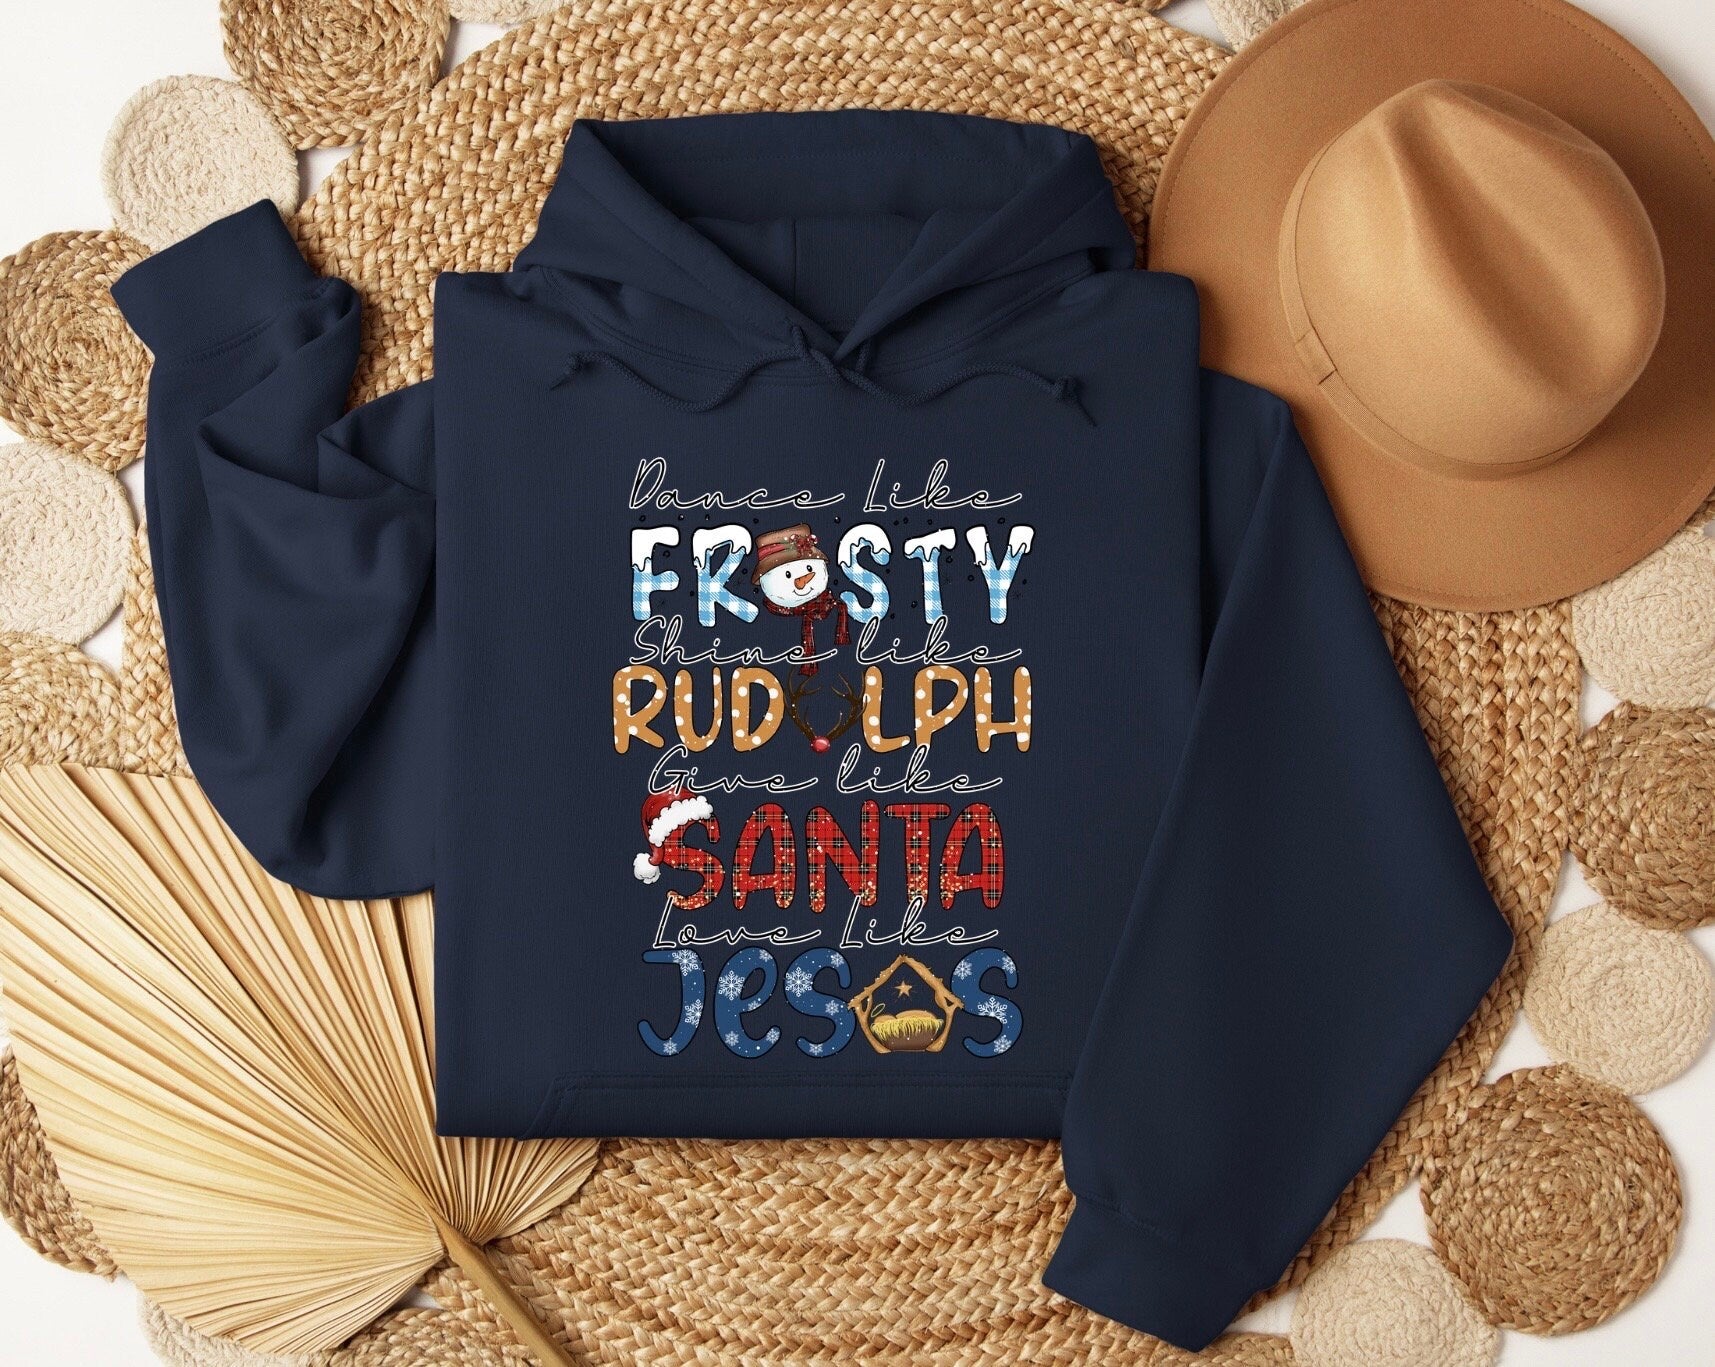 Dance Like Frosty Shine like Rudolph Give like Santa Love Like Jesus Shirt, Cute Christmas Sweatshirt, Christmas Shirt, Holiday Xmas Tee